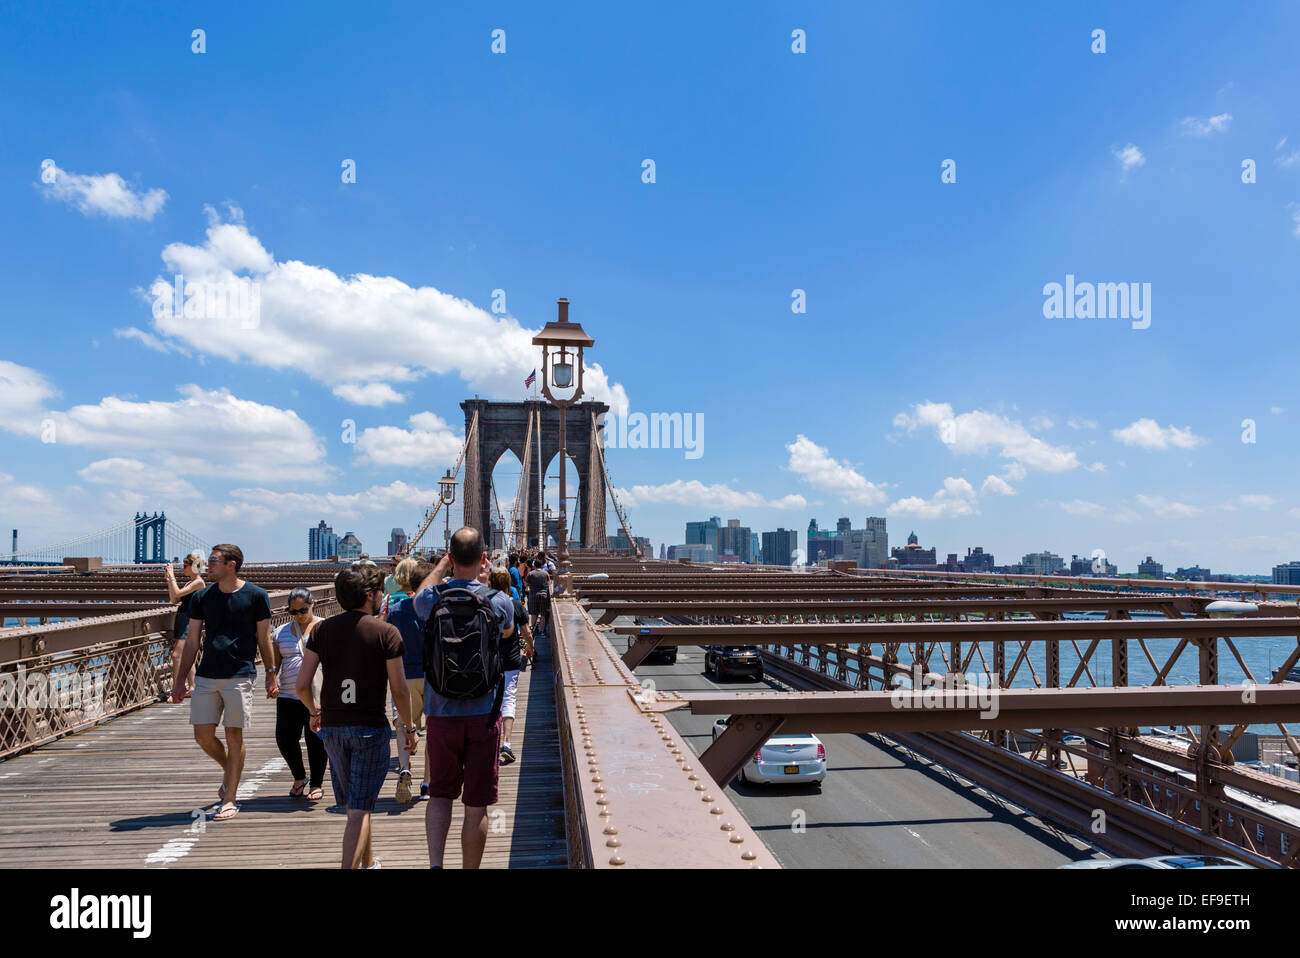 Pedoni sul ponte di Brooklyn Pedonale guardando in direzione di Brooklyn, New York City, NY, STATI UNITI D'AMERICA Foto Stock